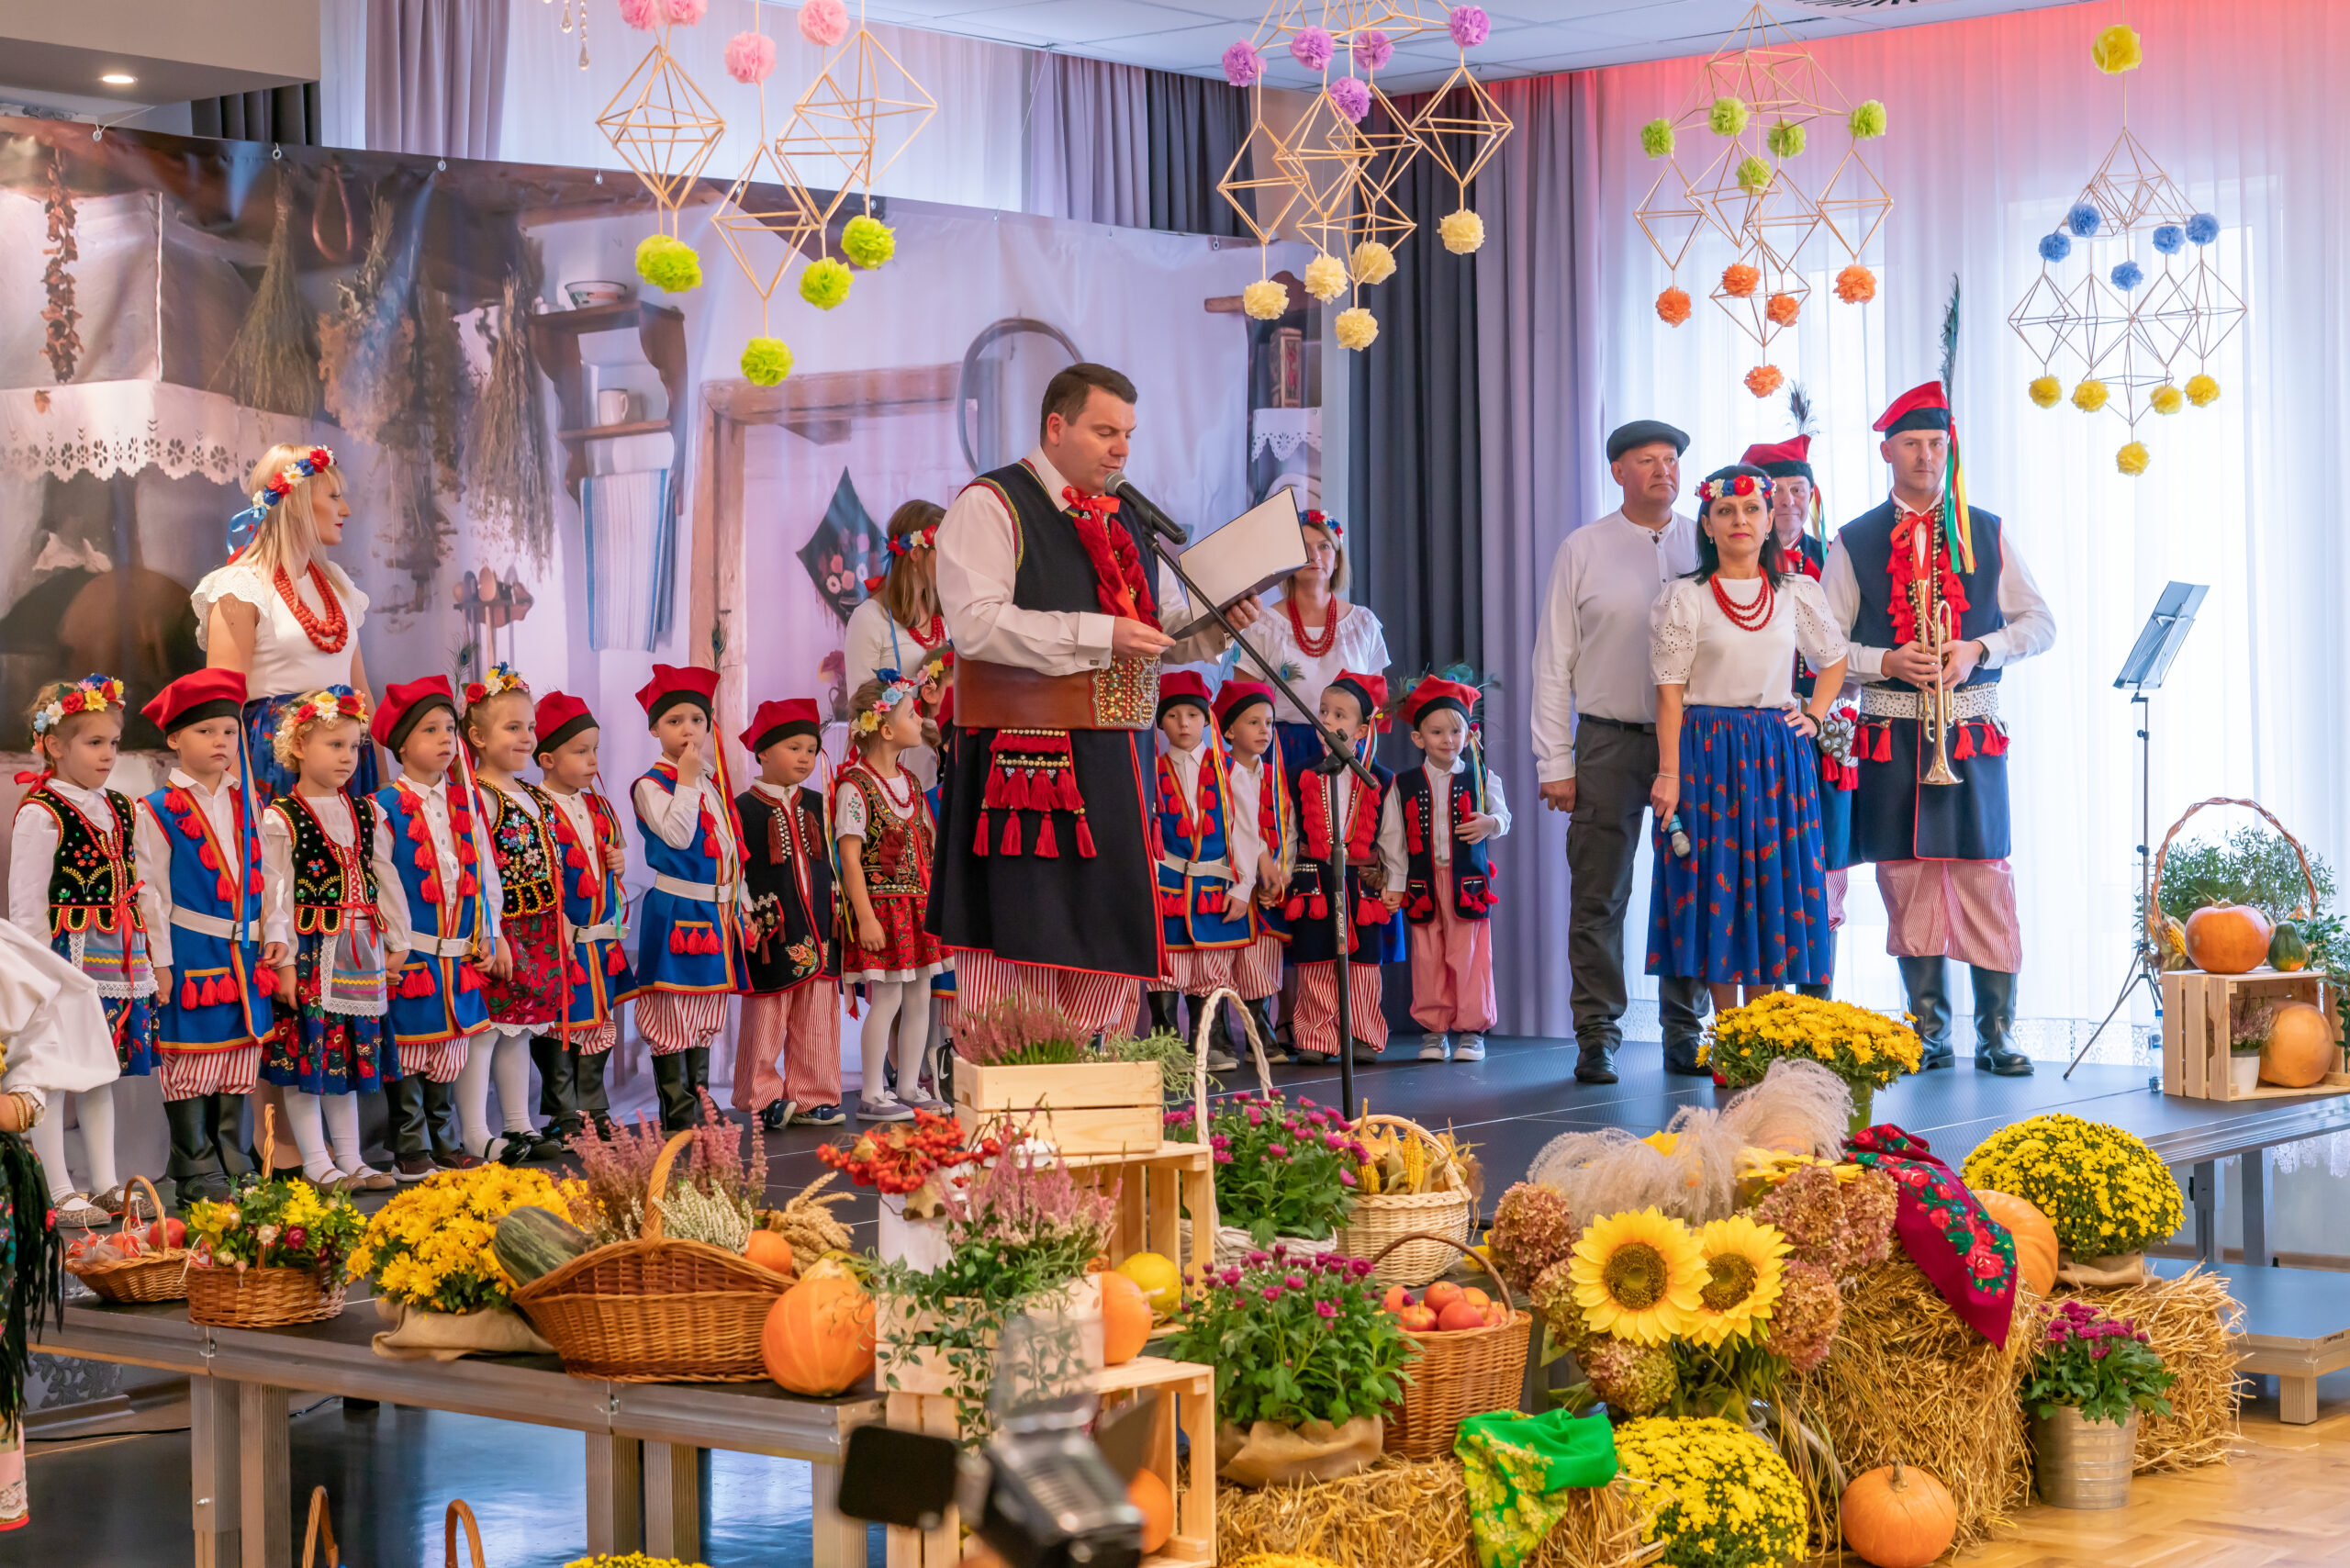 zdjcie przedstawia scenę, na scenie dzieci i dorośli w strojach krakowskich